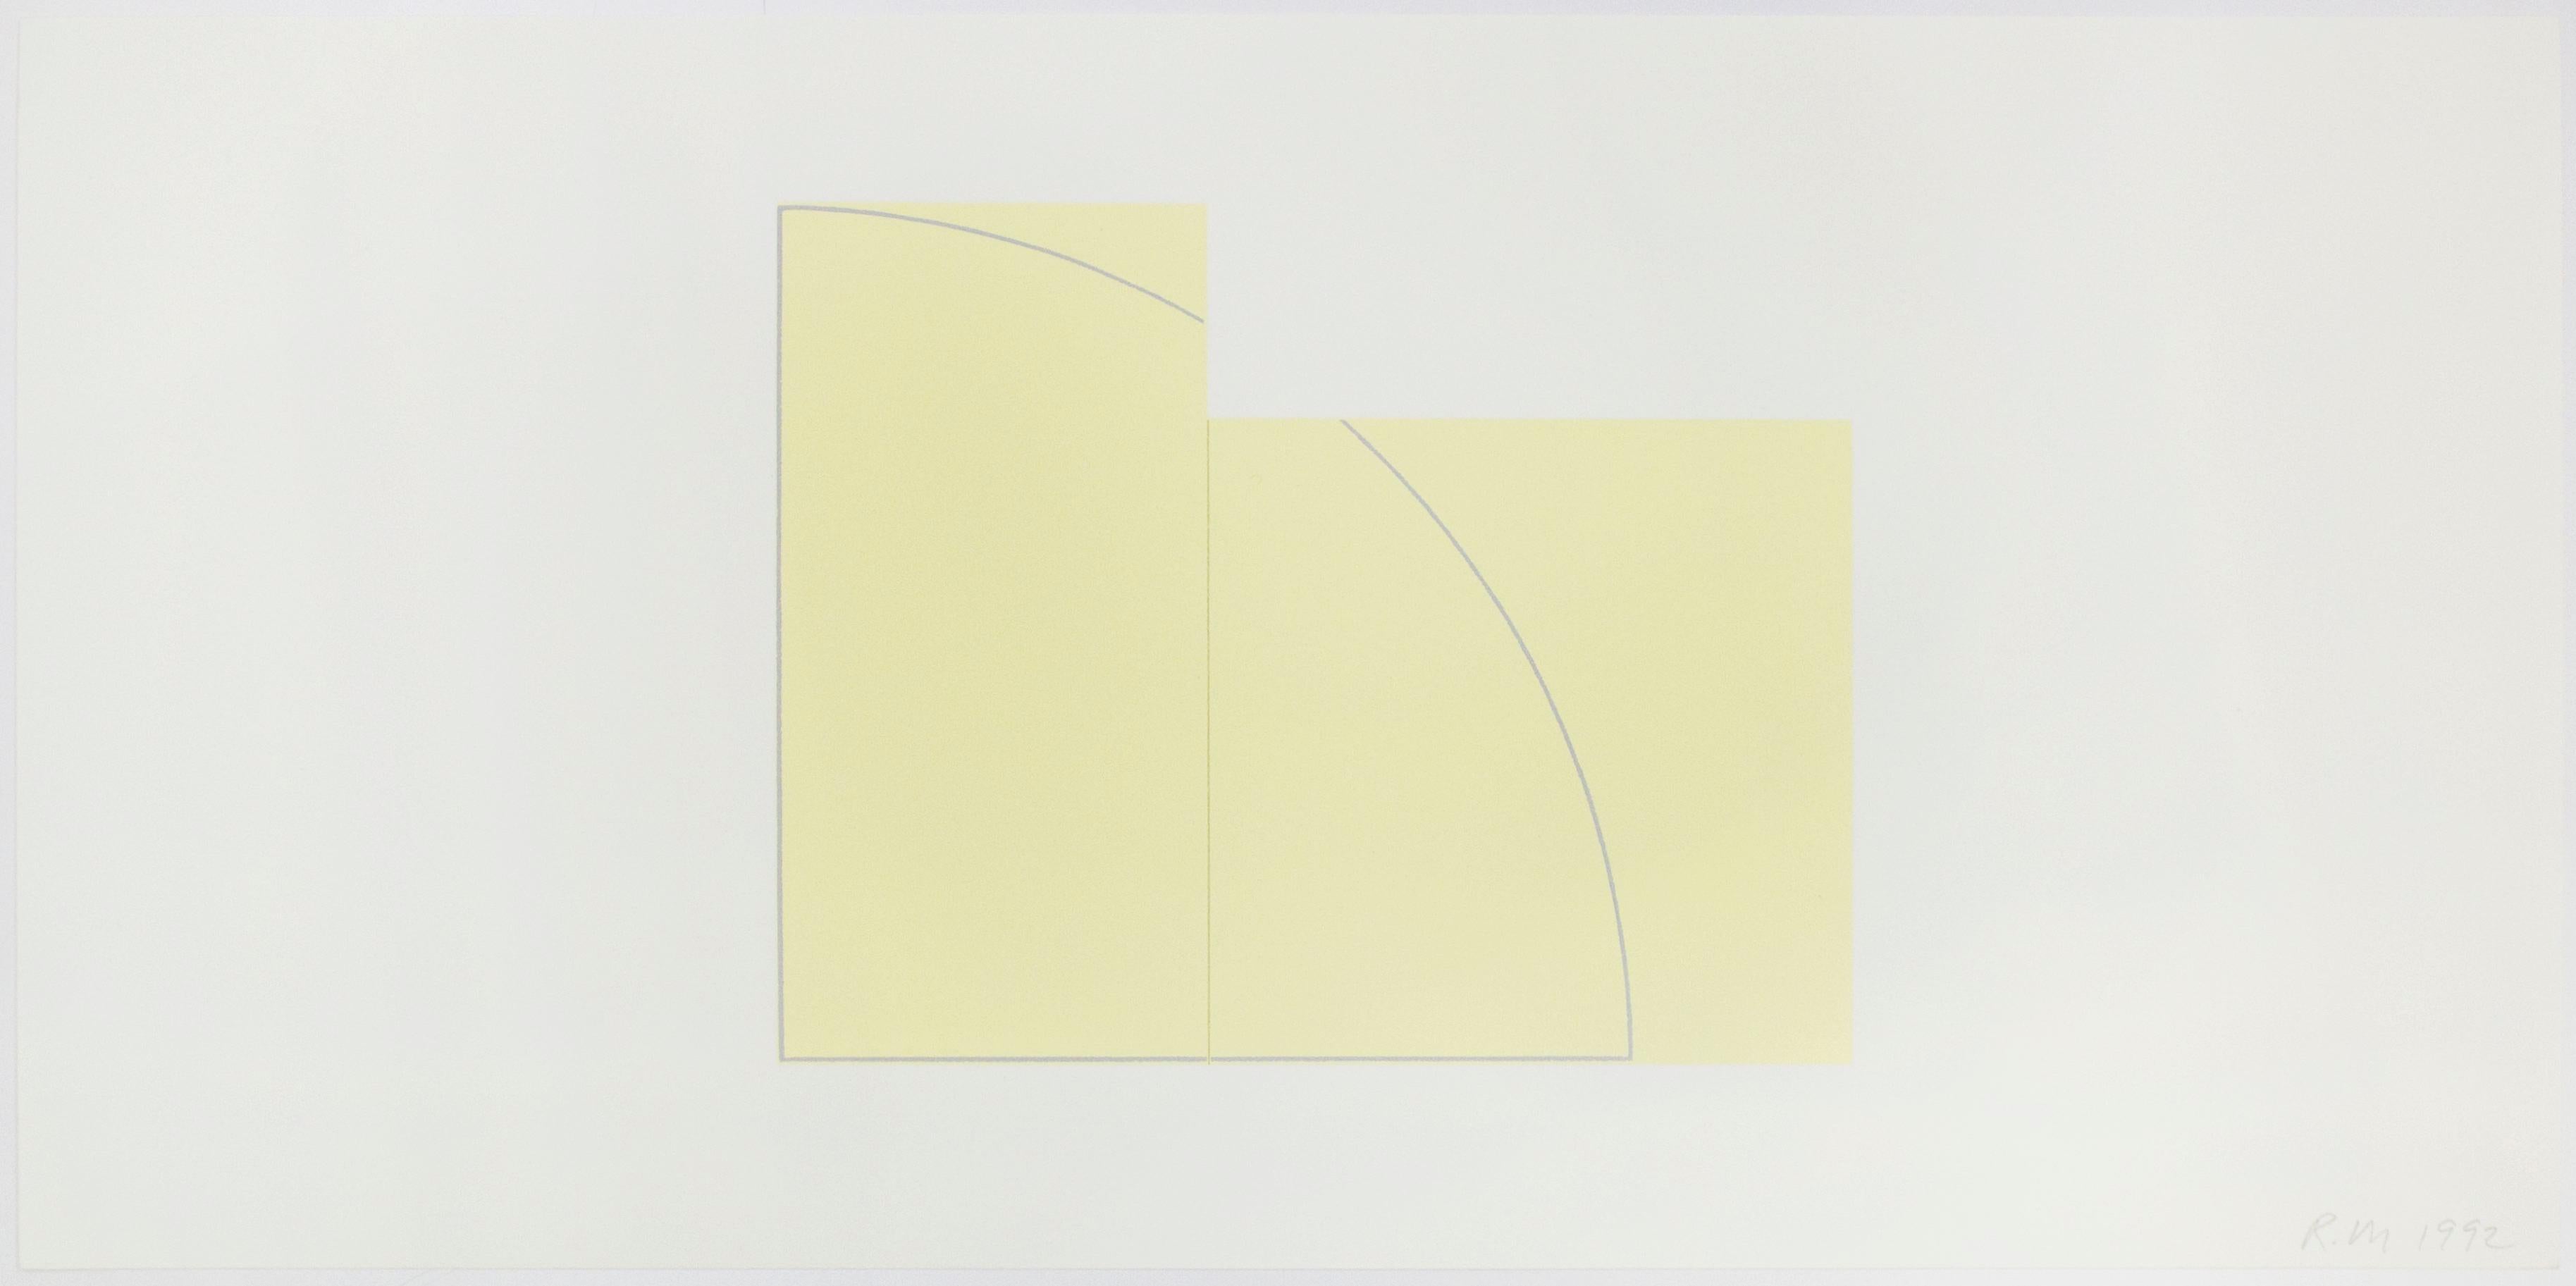 Mangold, der mit der minimalistischen Kunstbewegung der 1960er Jahre assoziiert wird, entwickelte ein reduziertes Vokabular, das auf geometrischen Formen, monochromen Farben und einer Betonung der Flächigkeit der gemalten Bildfläche basiert.